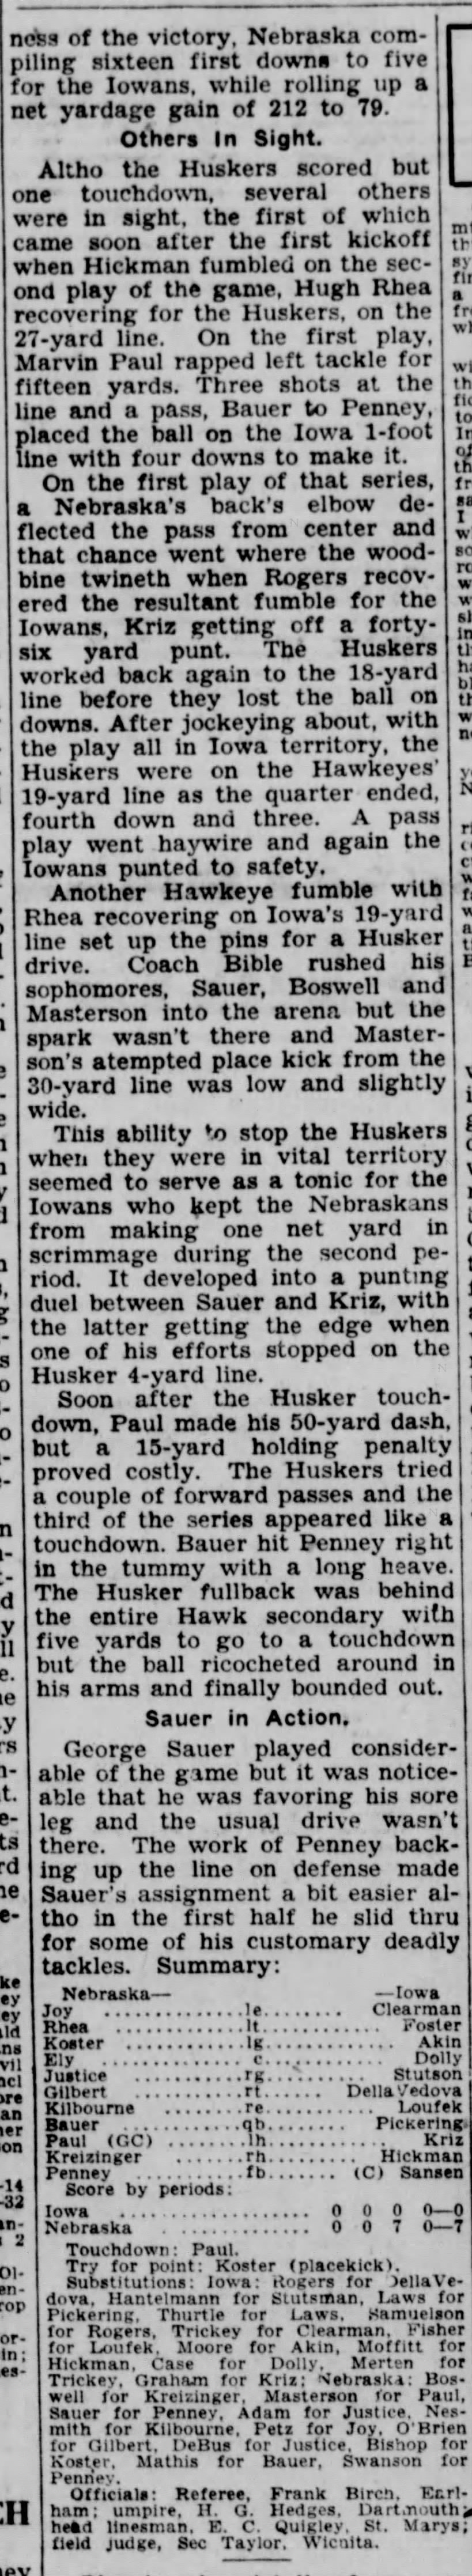 1931 Nebraska-Iowa football, part 3